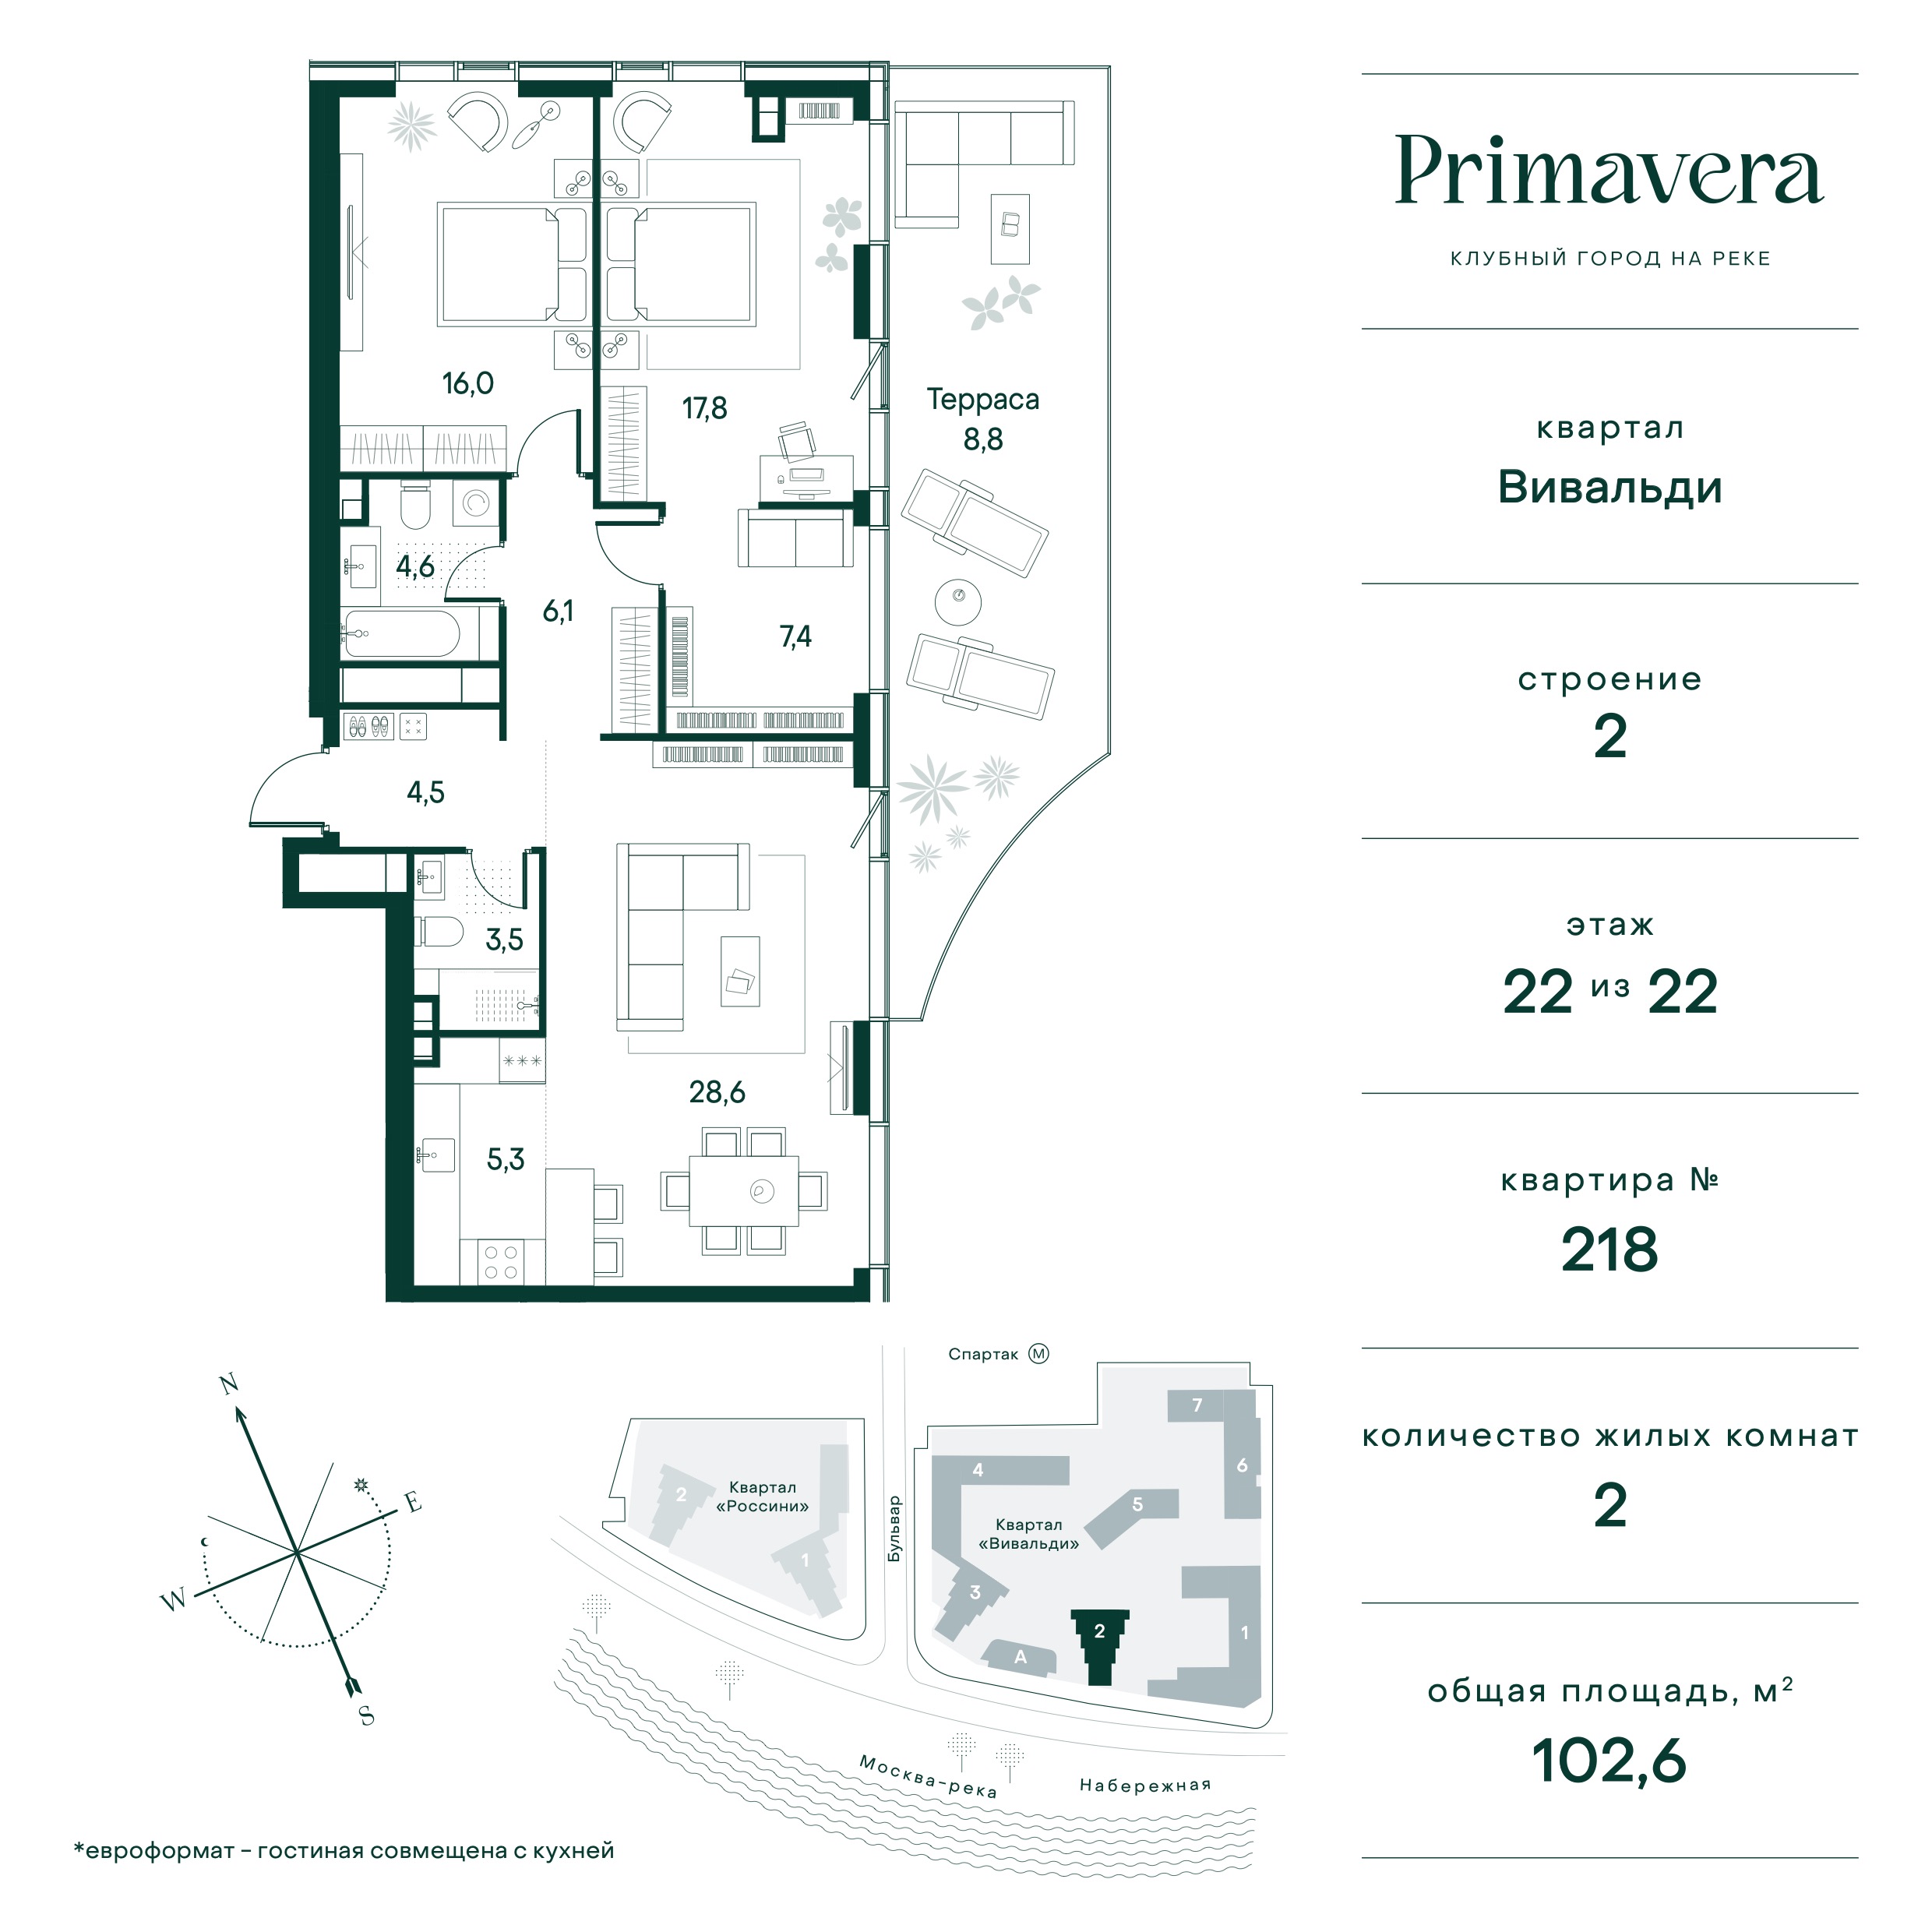 Планировка Квартира с 2 спальнями 102.6 м2 в ЖК Primavera